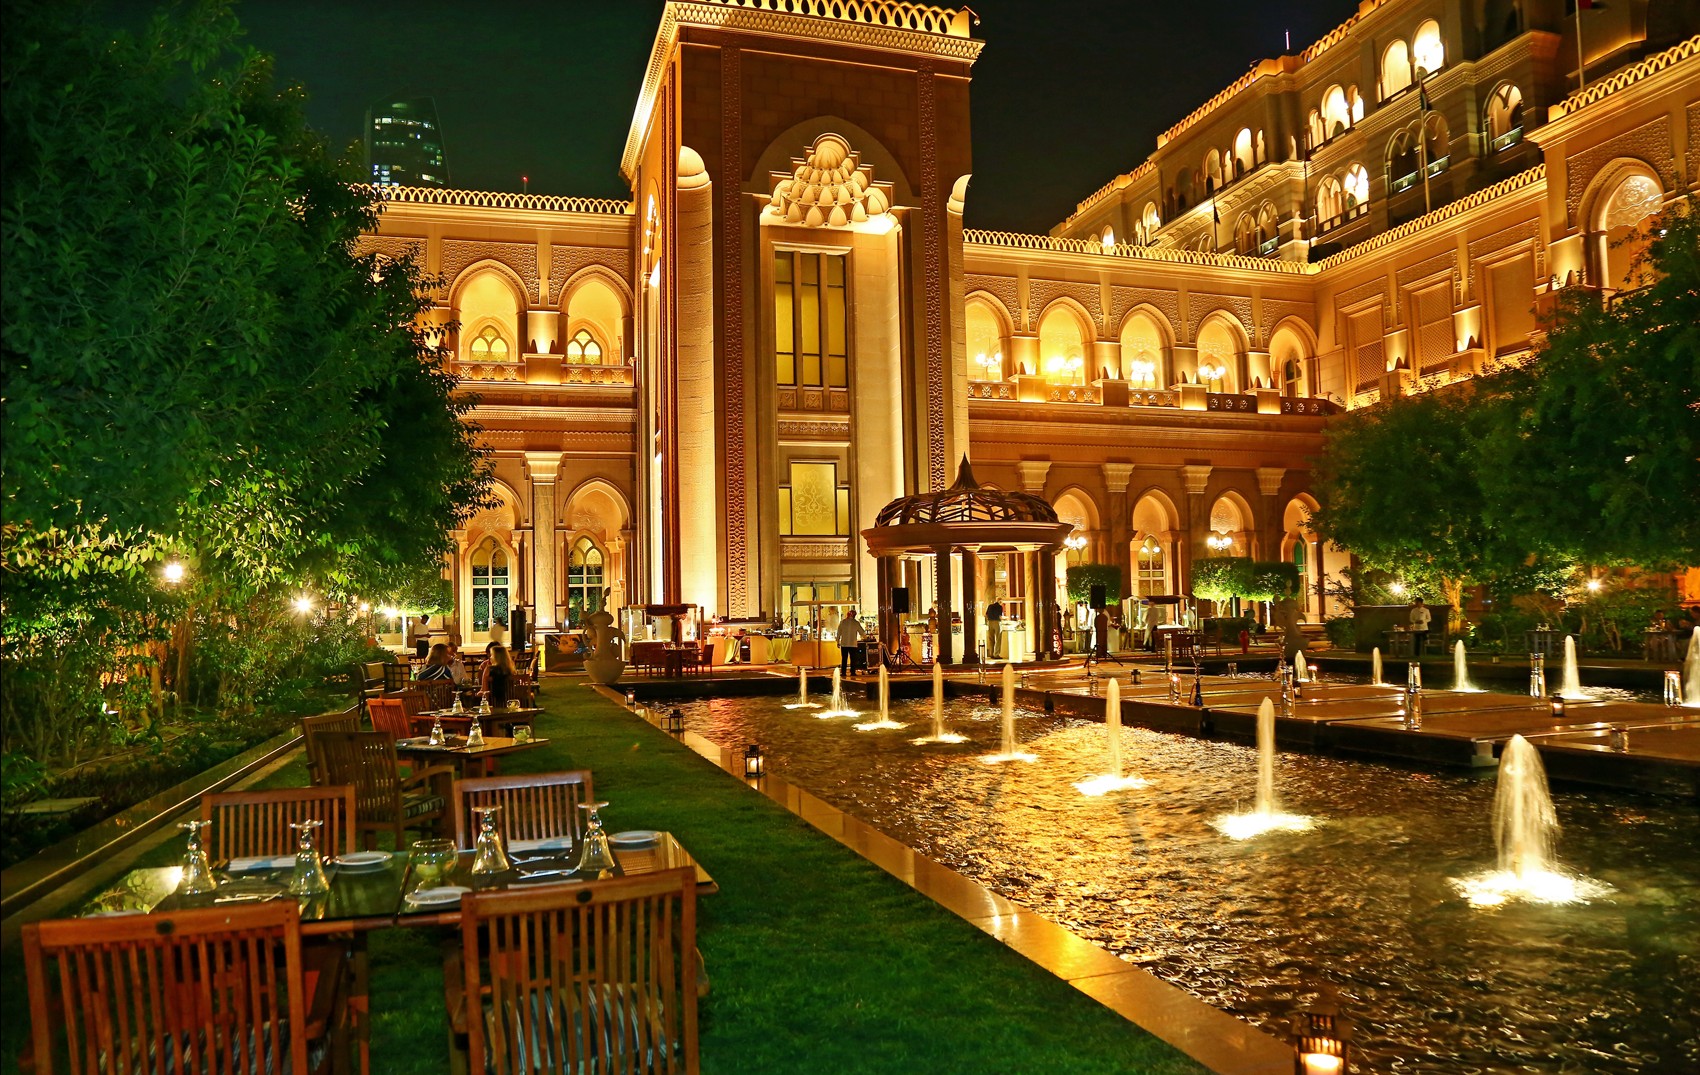 ليالي إماراتية كل خميس بفندق قصر الإمارات